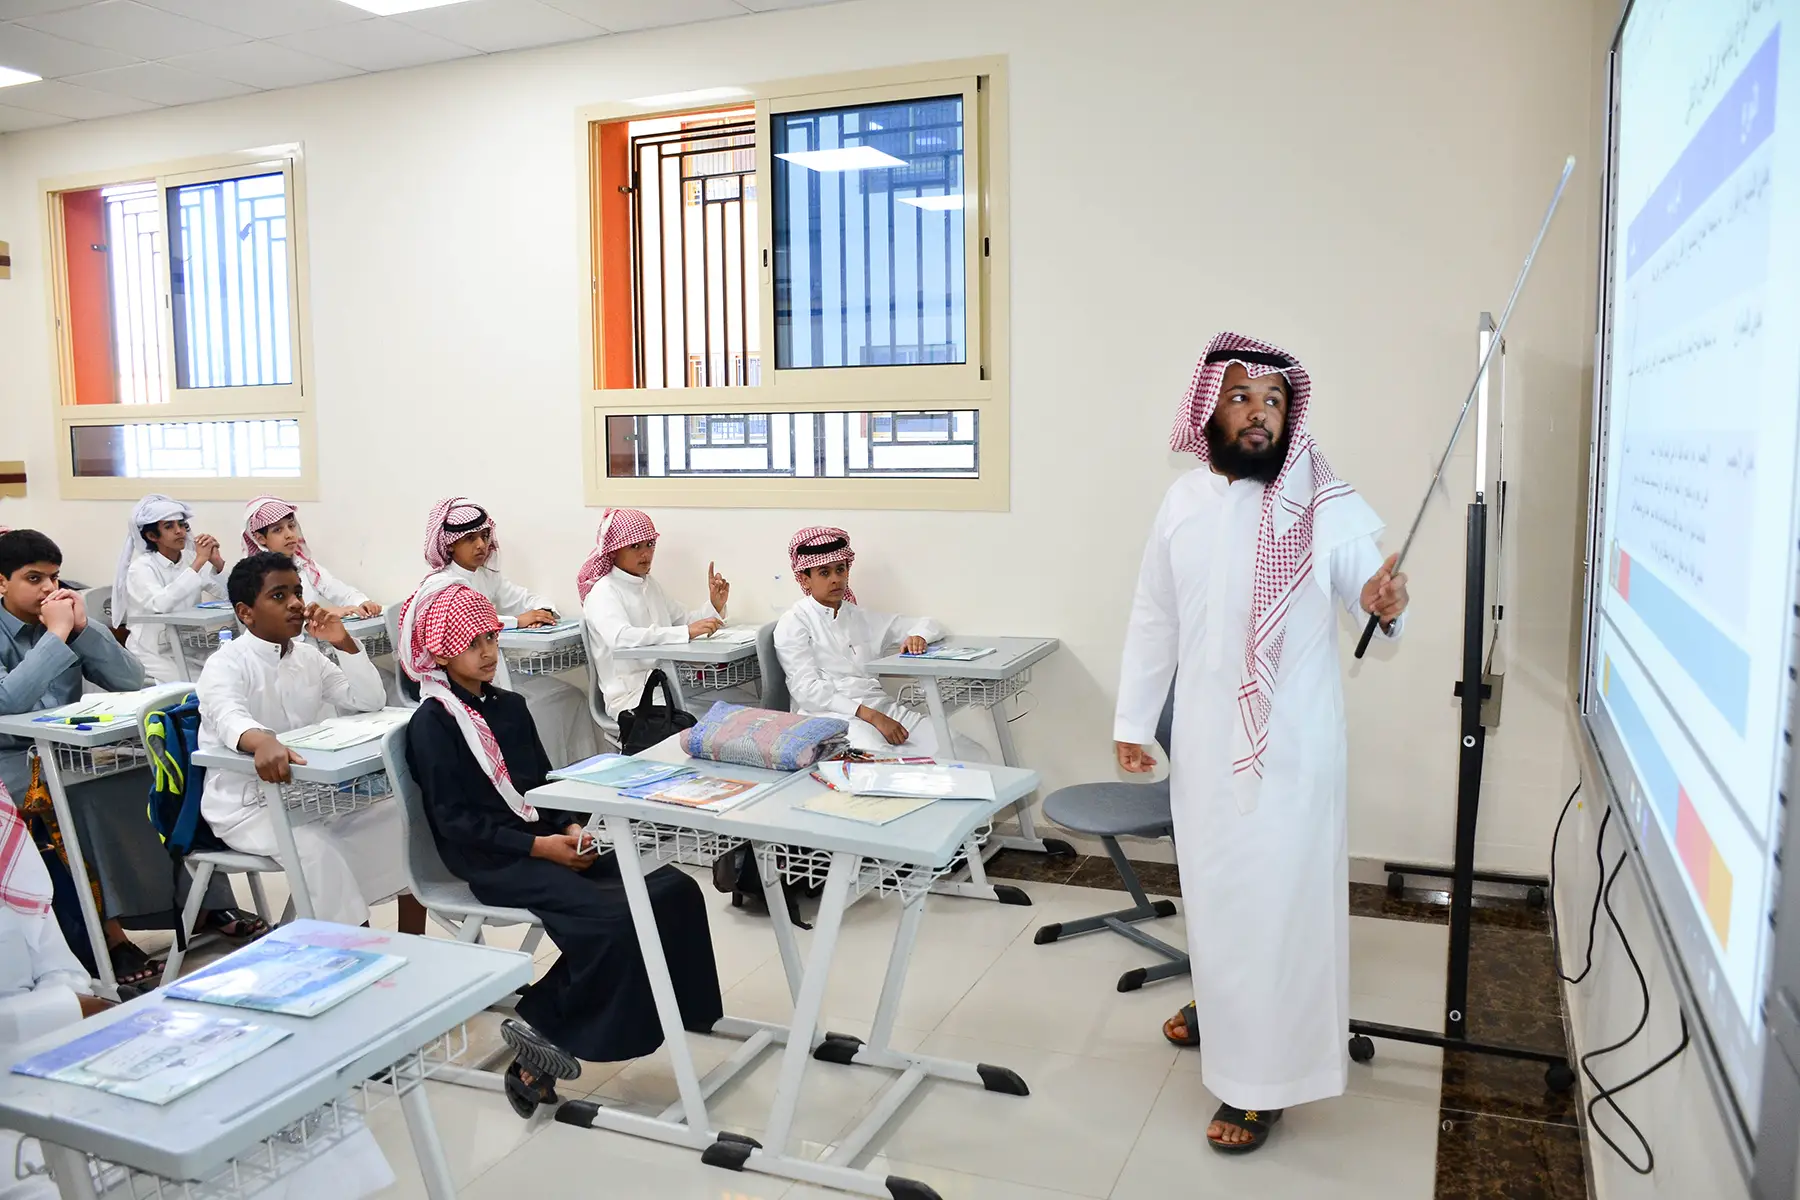 Typical classroom in Saudi Arabia